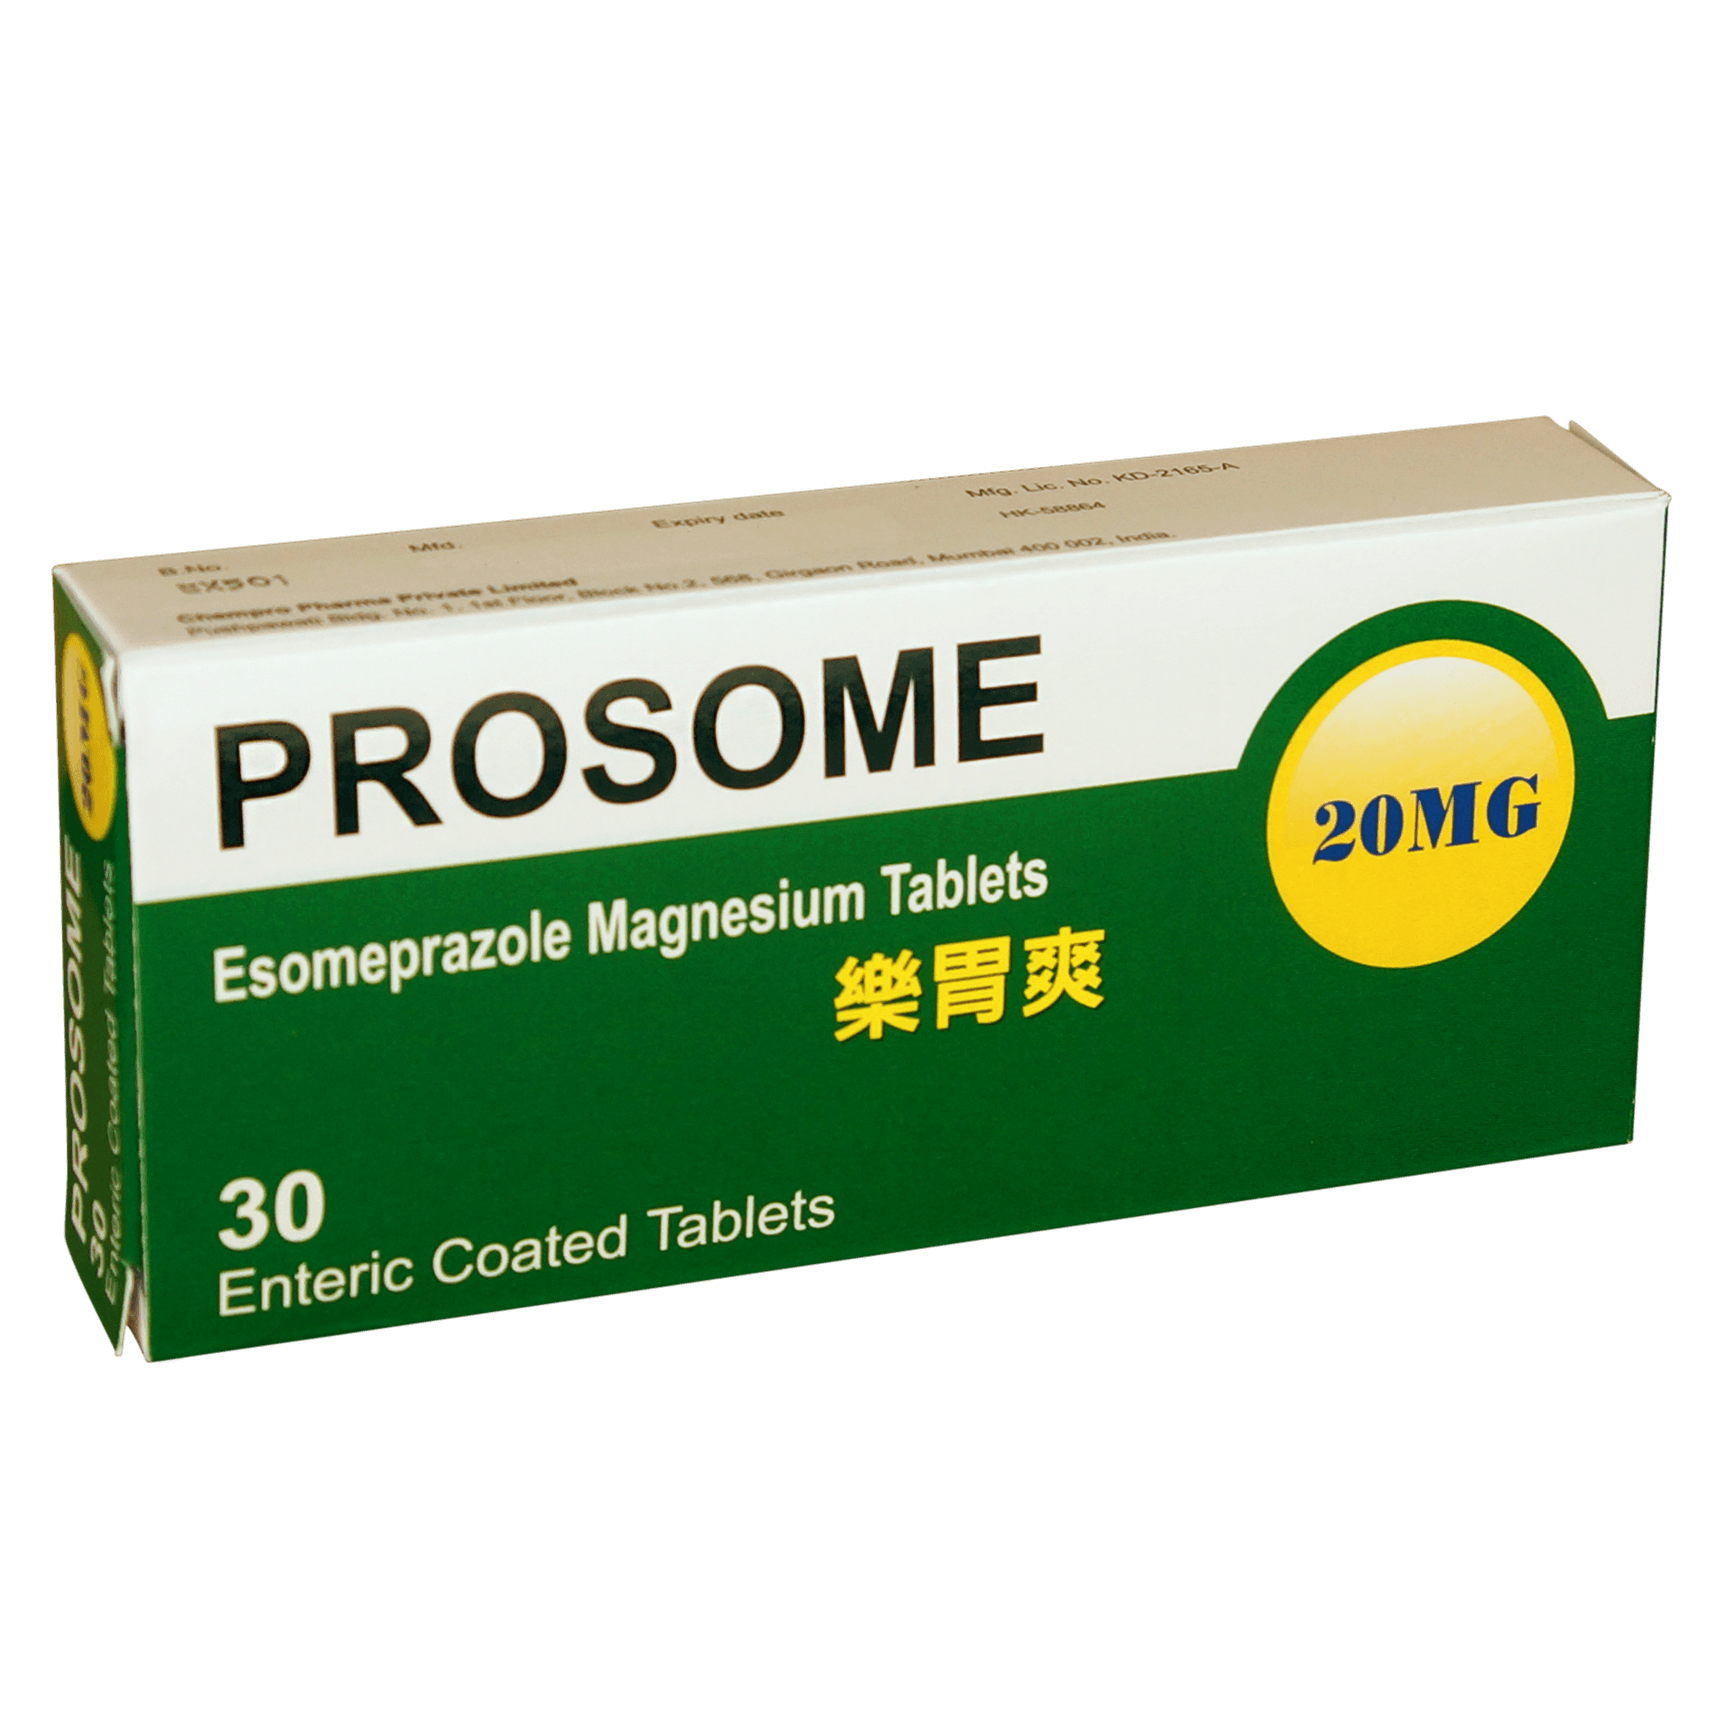 樂胃爽 Prosome Enteric Coated Tab 20mg 3x10's (Alu-Alu blister pack) (P1S1S3)